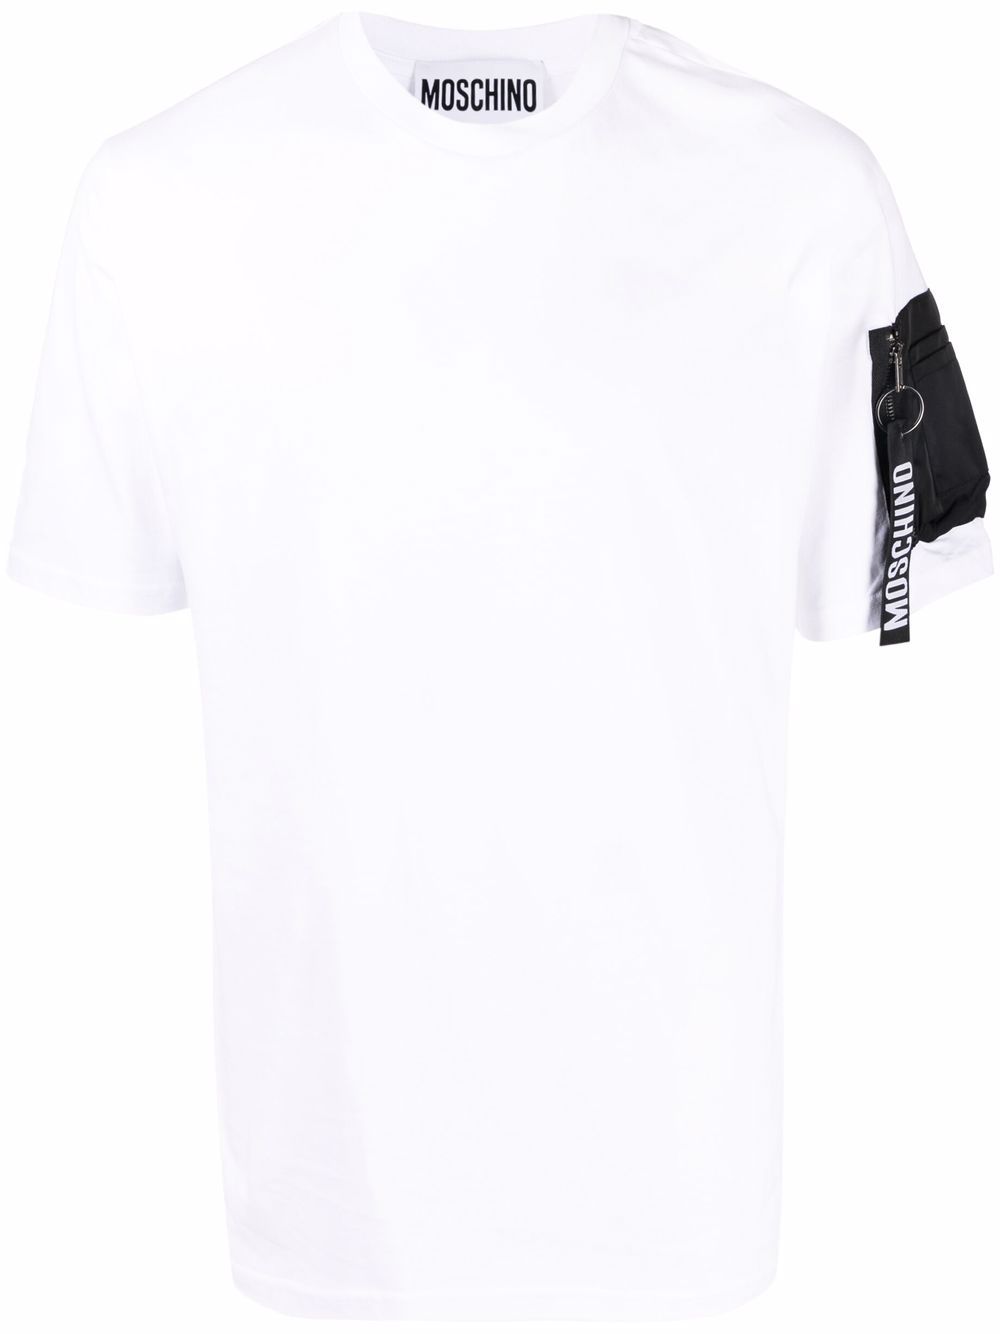 фото Moschino футболка с карманом на рукаве